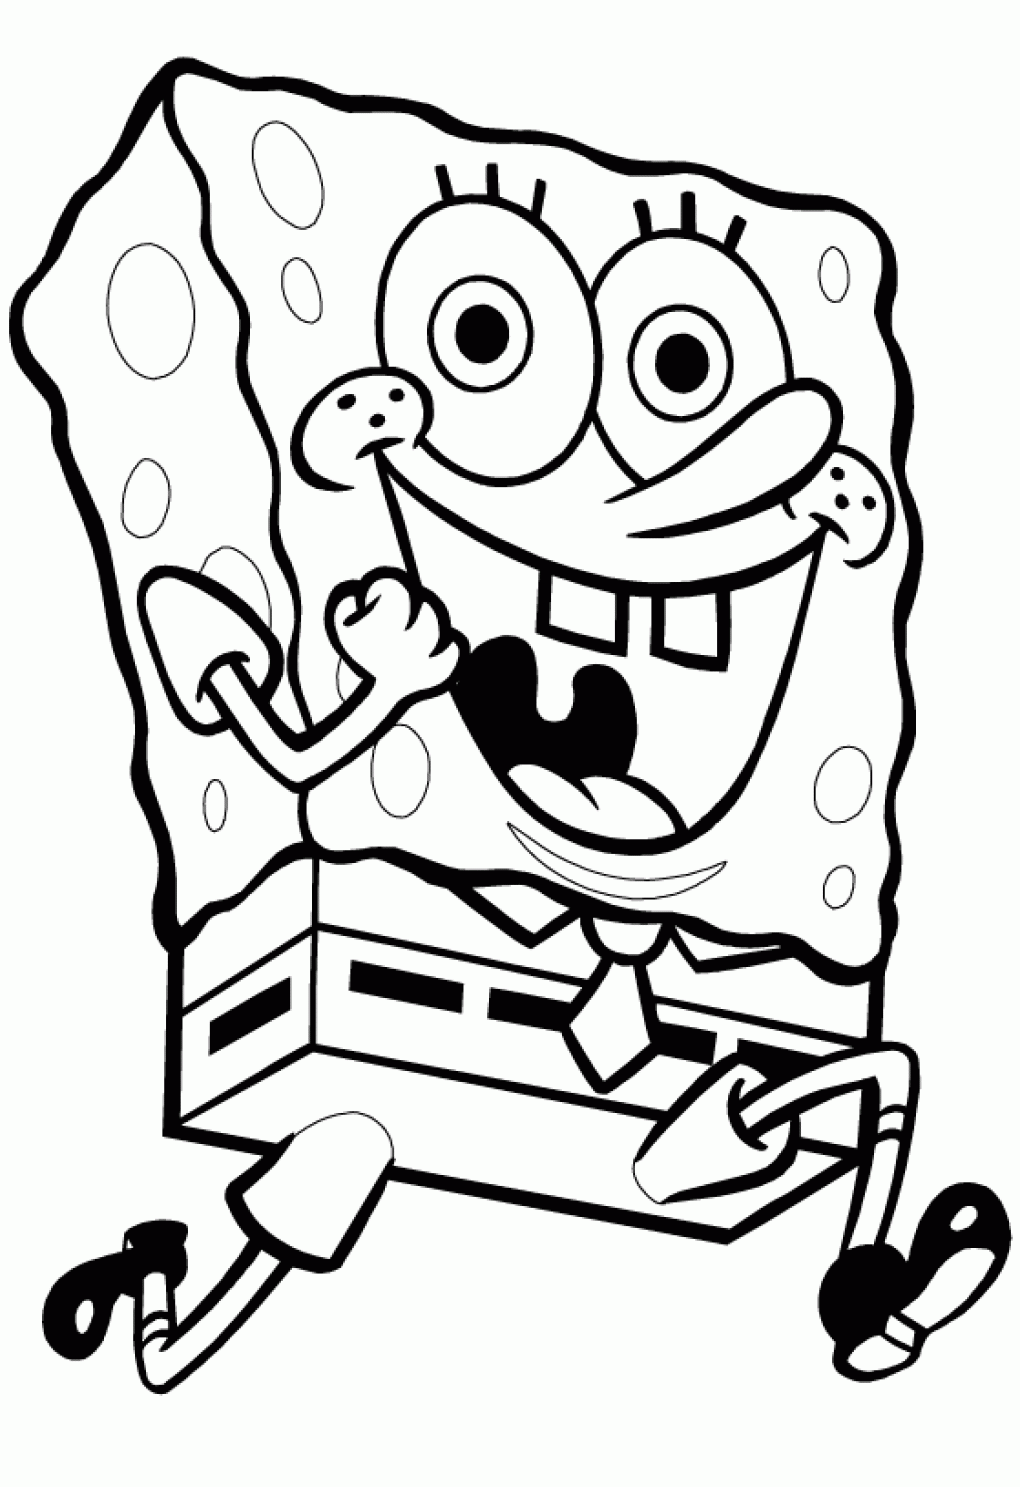 Spongebob Squarepants Coloring Page Muitos Desenhos De Bob Esponja